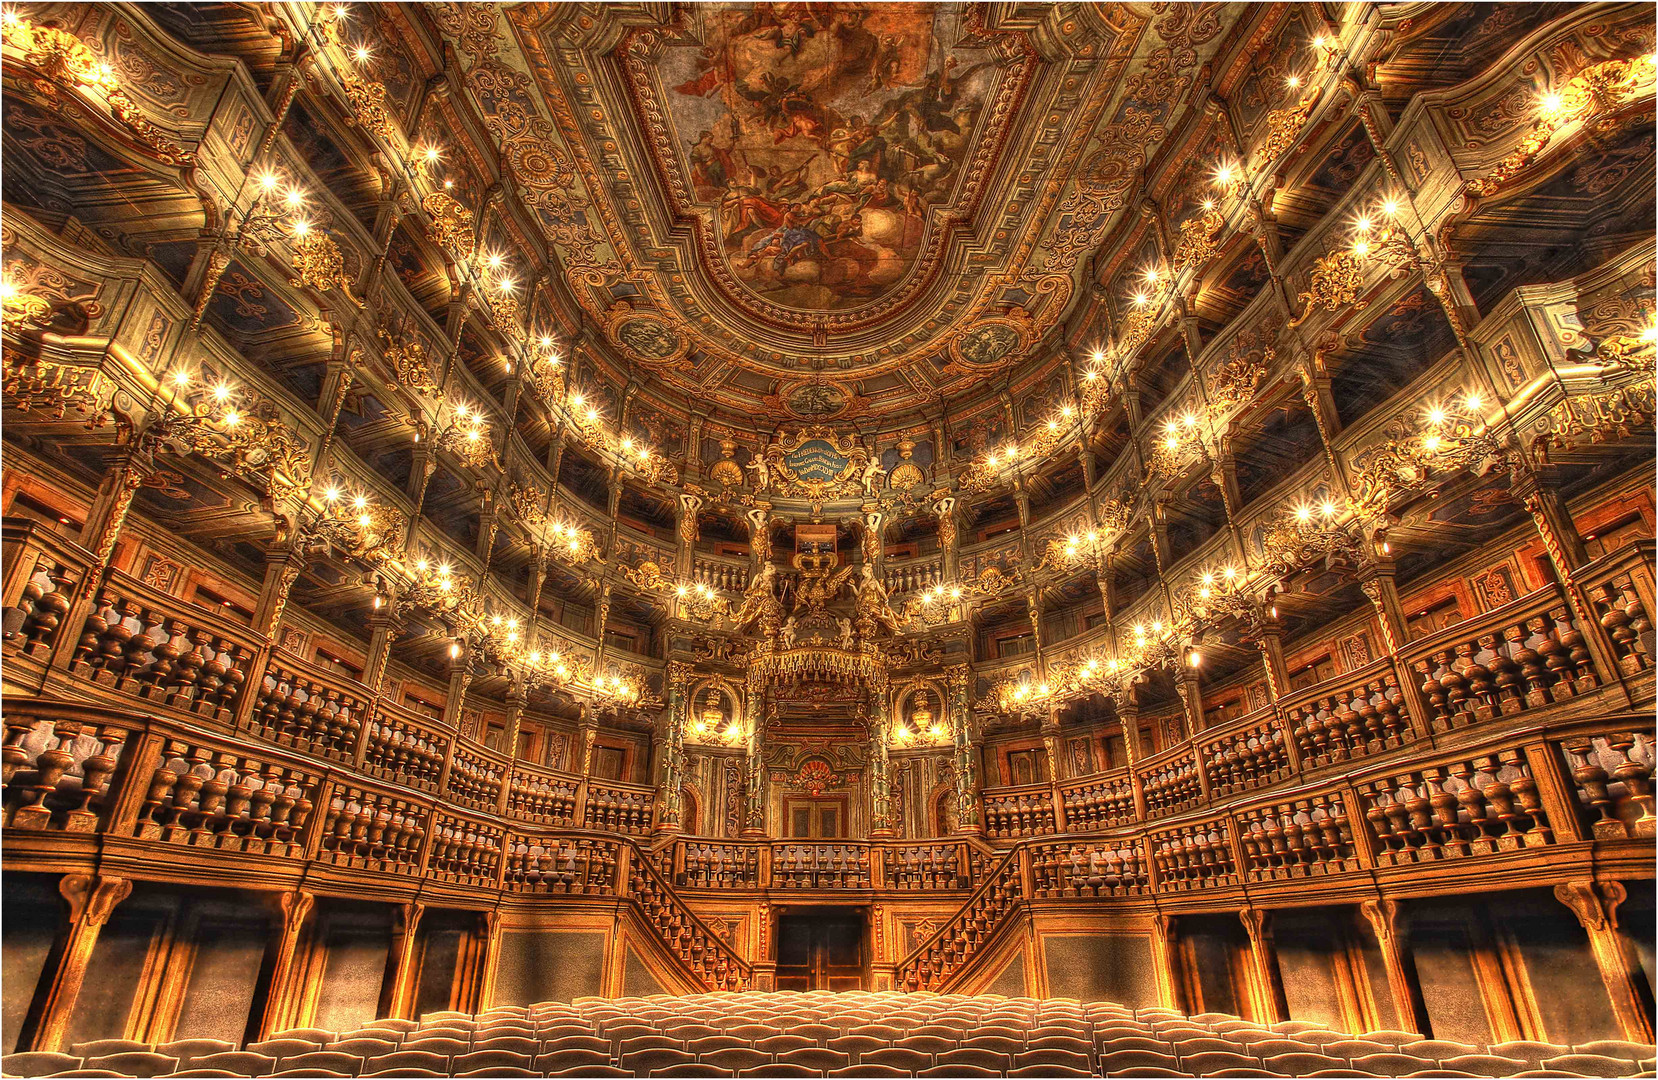 Opernhaus in Bayreuth......